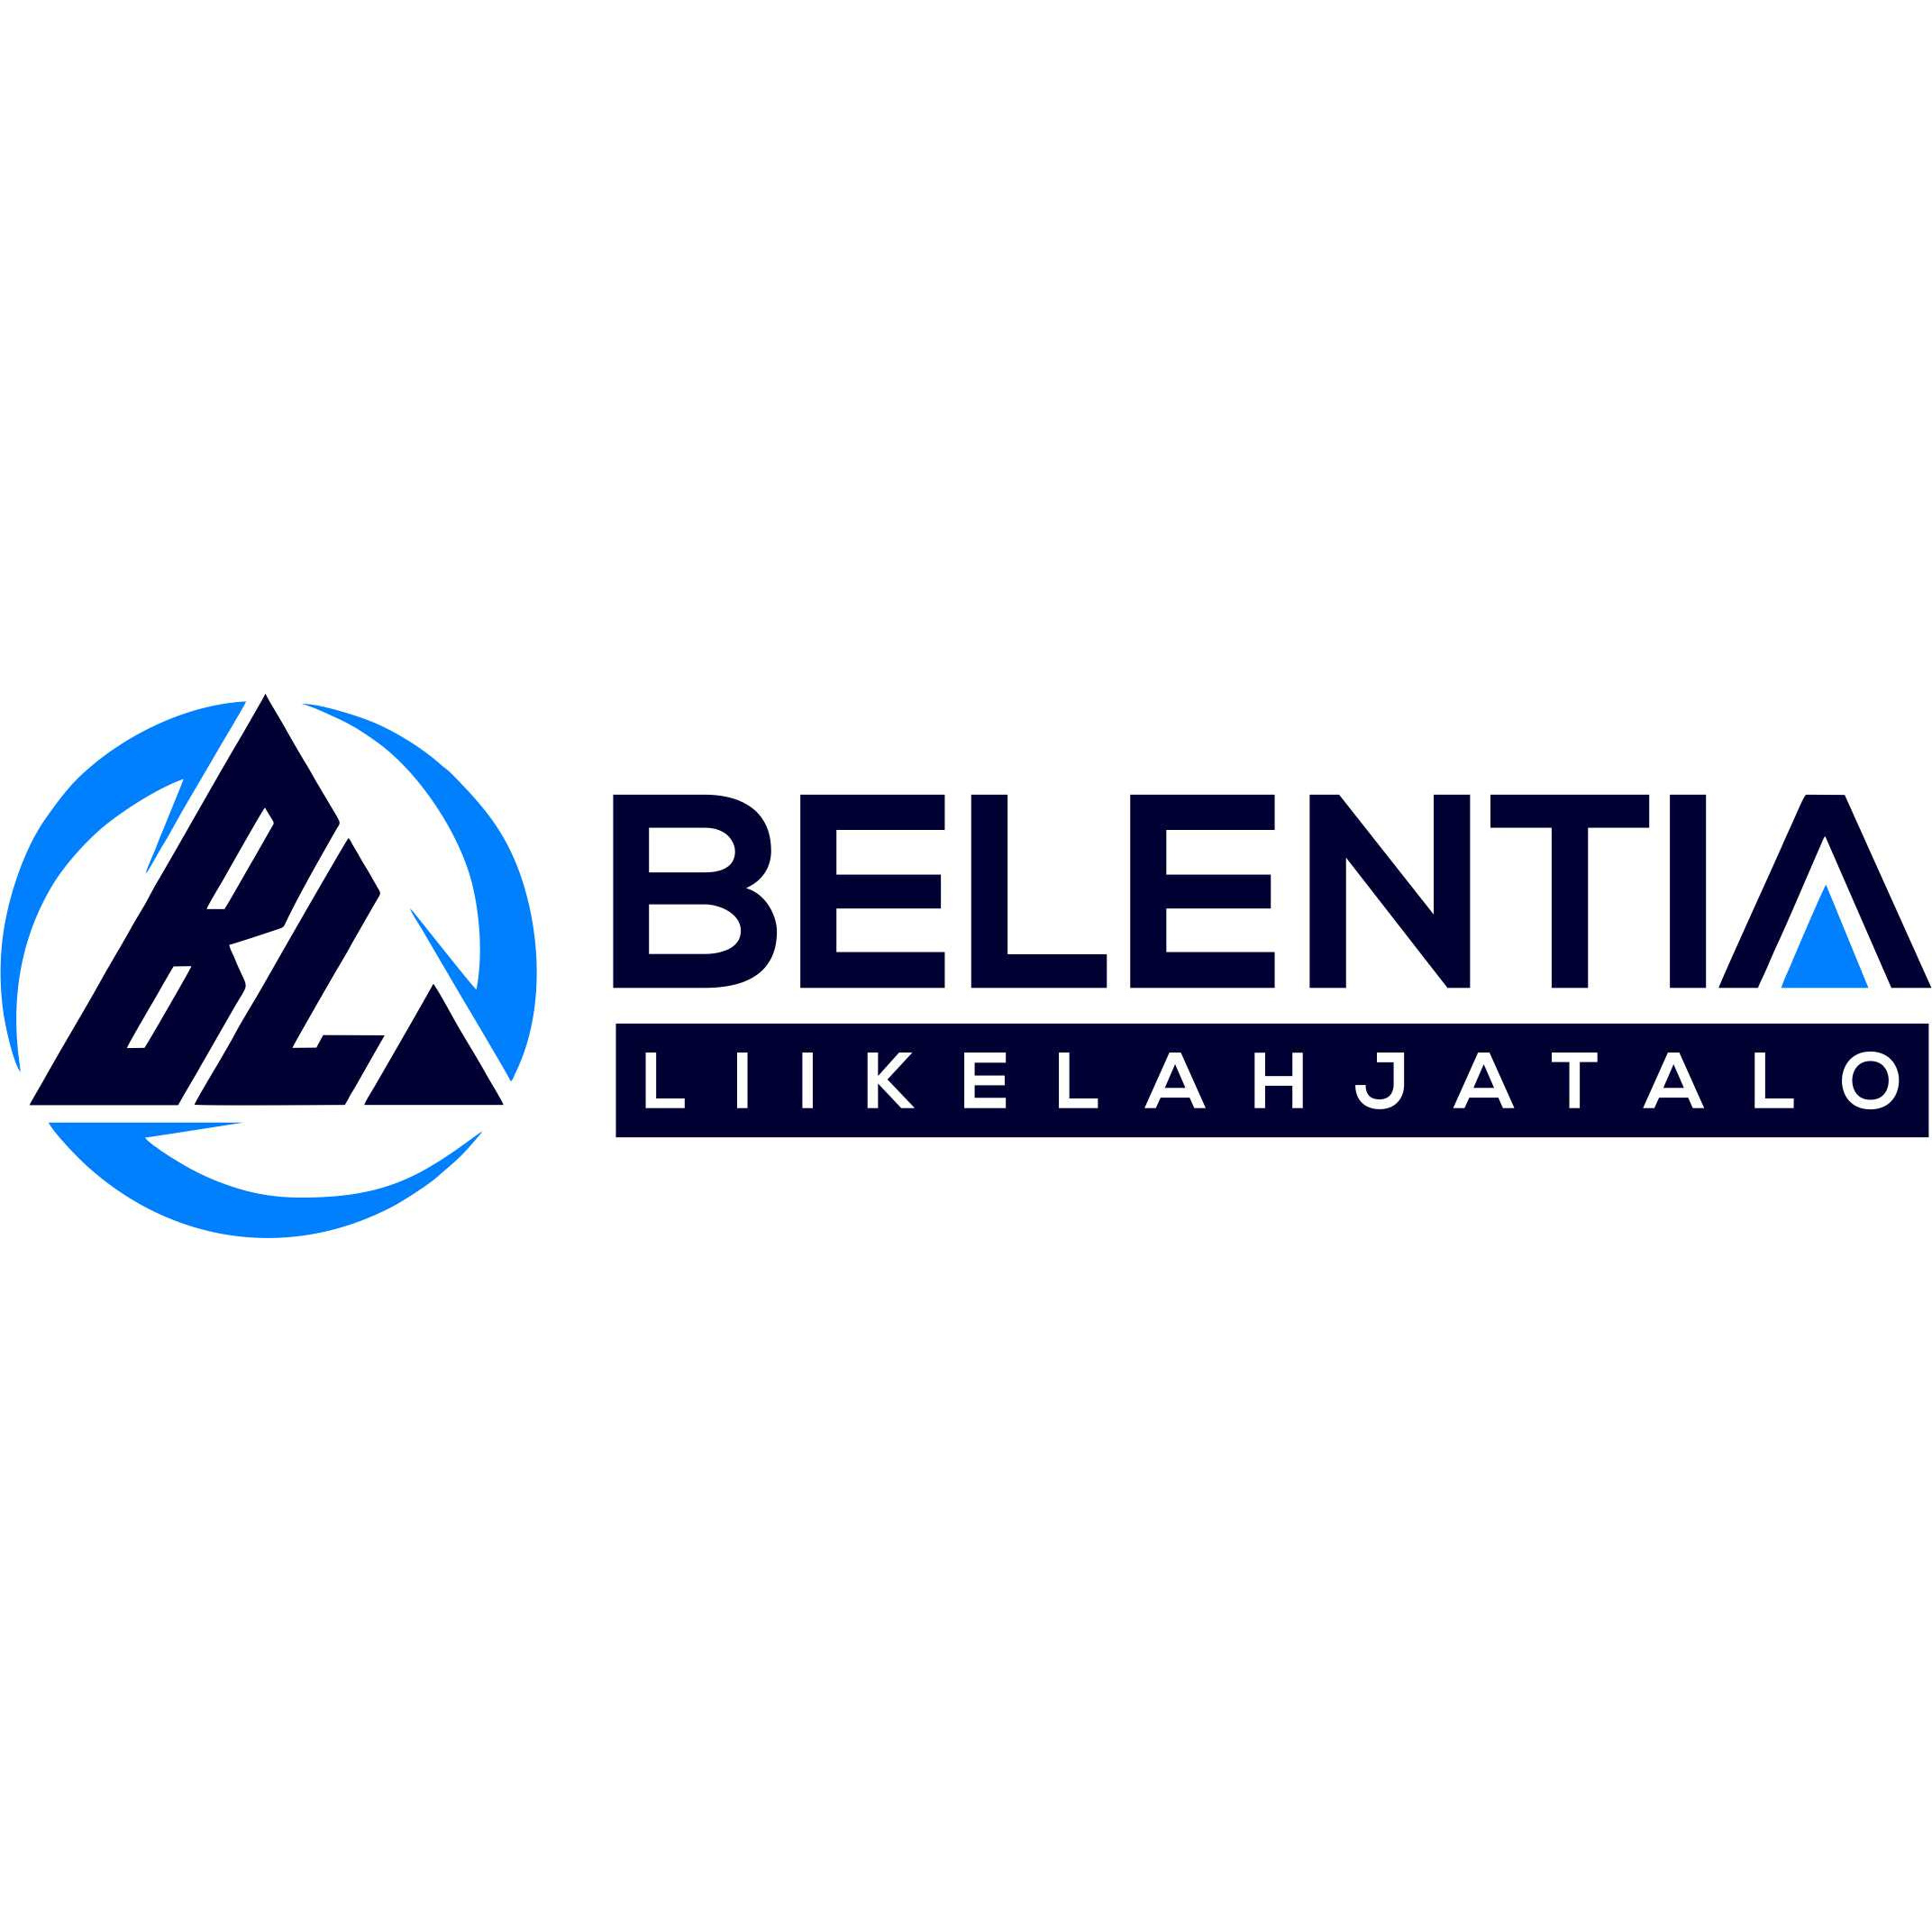 Belentia Liikelahjatalo Logo